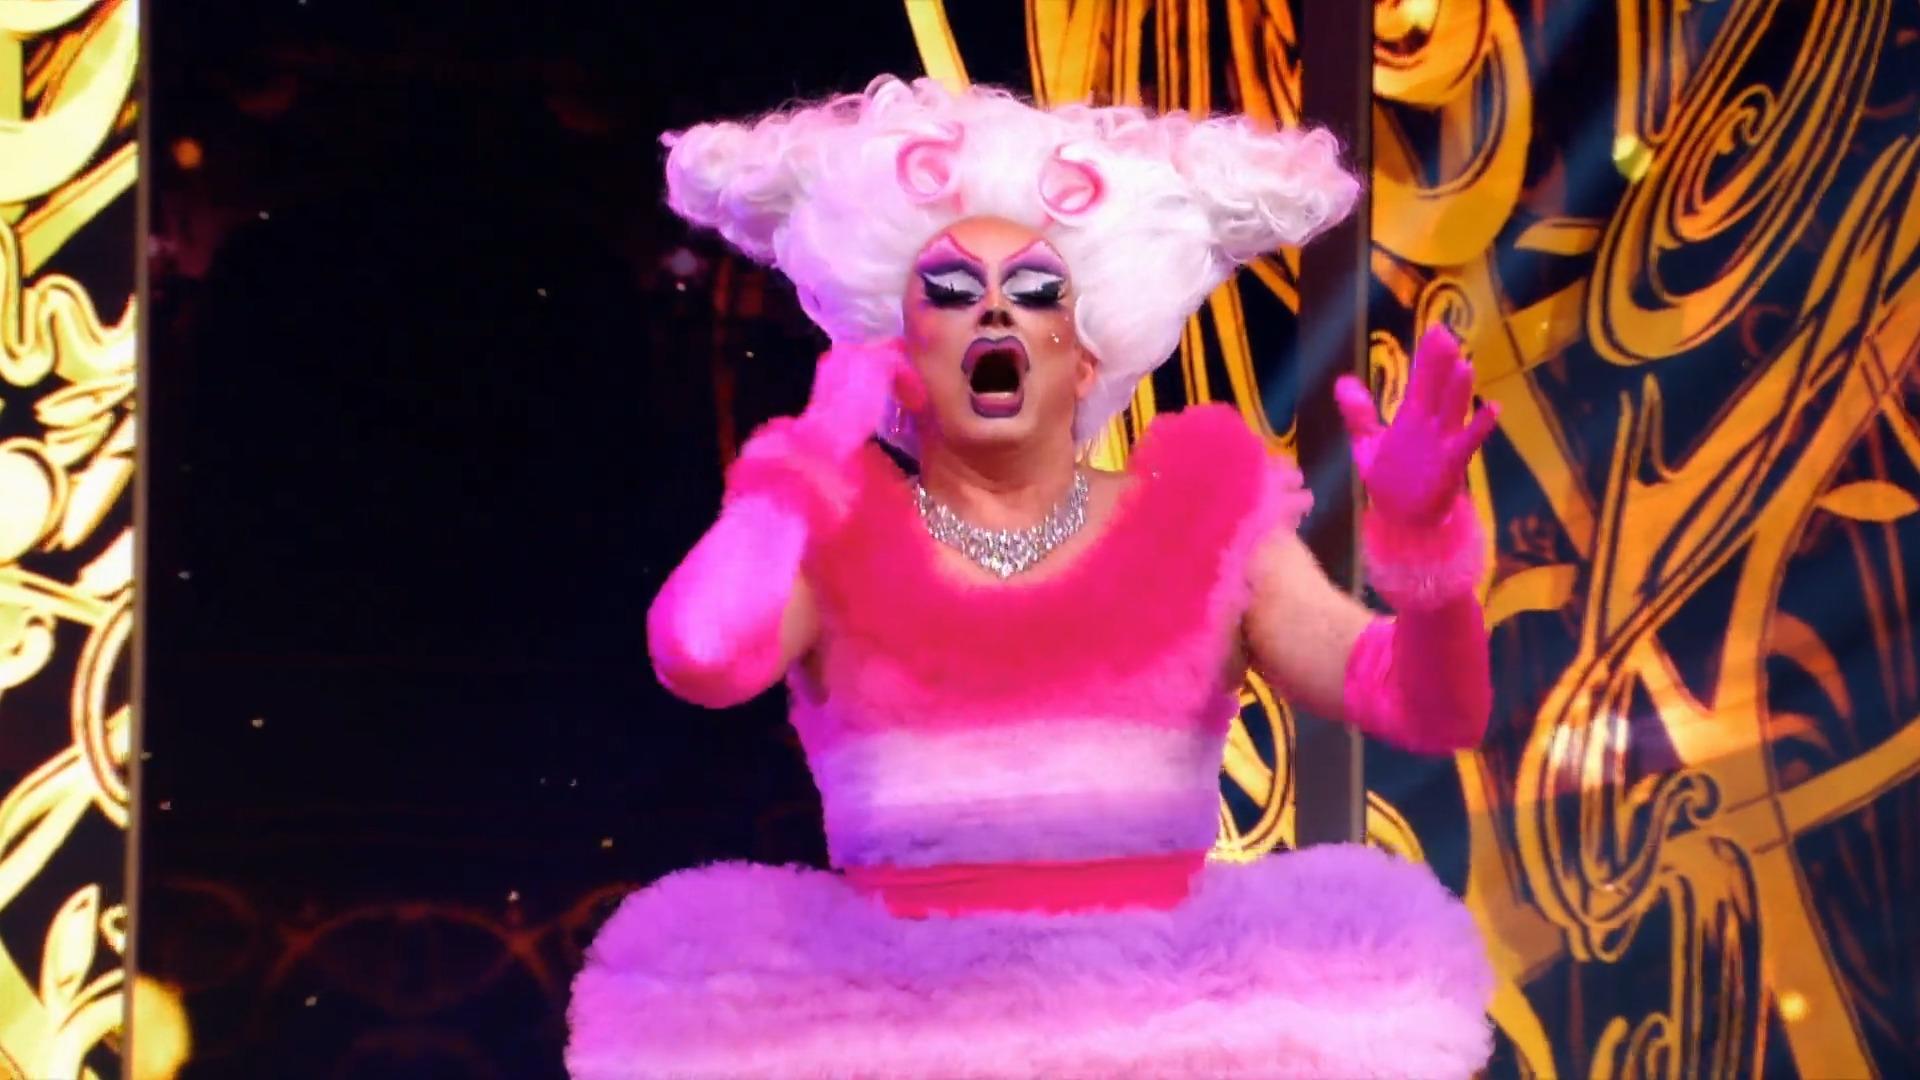 Sie ist die Königin der Nacht - gewissermaßen Viva la Diva: Hier kommt "The Wig"